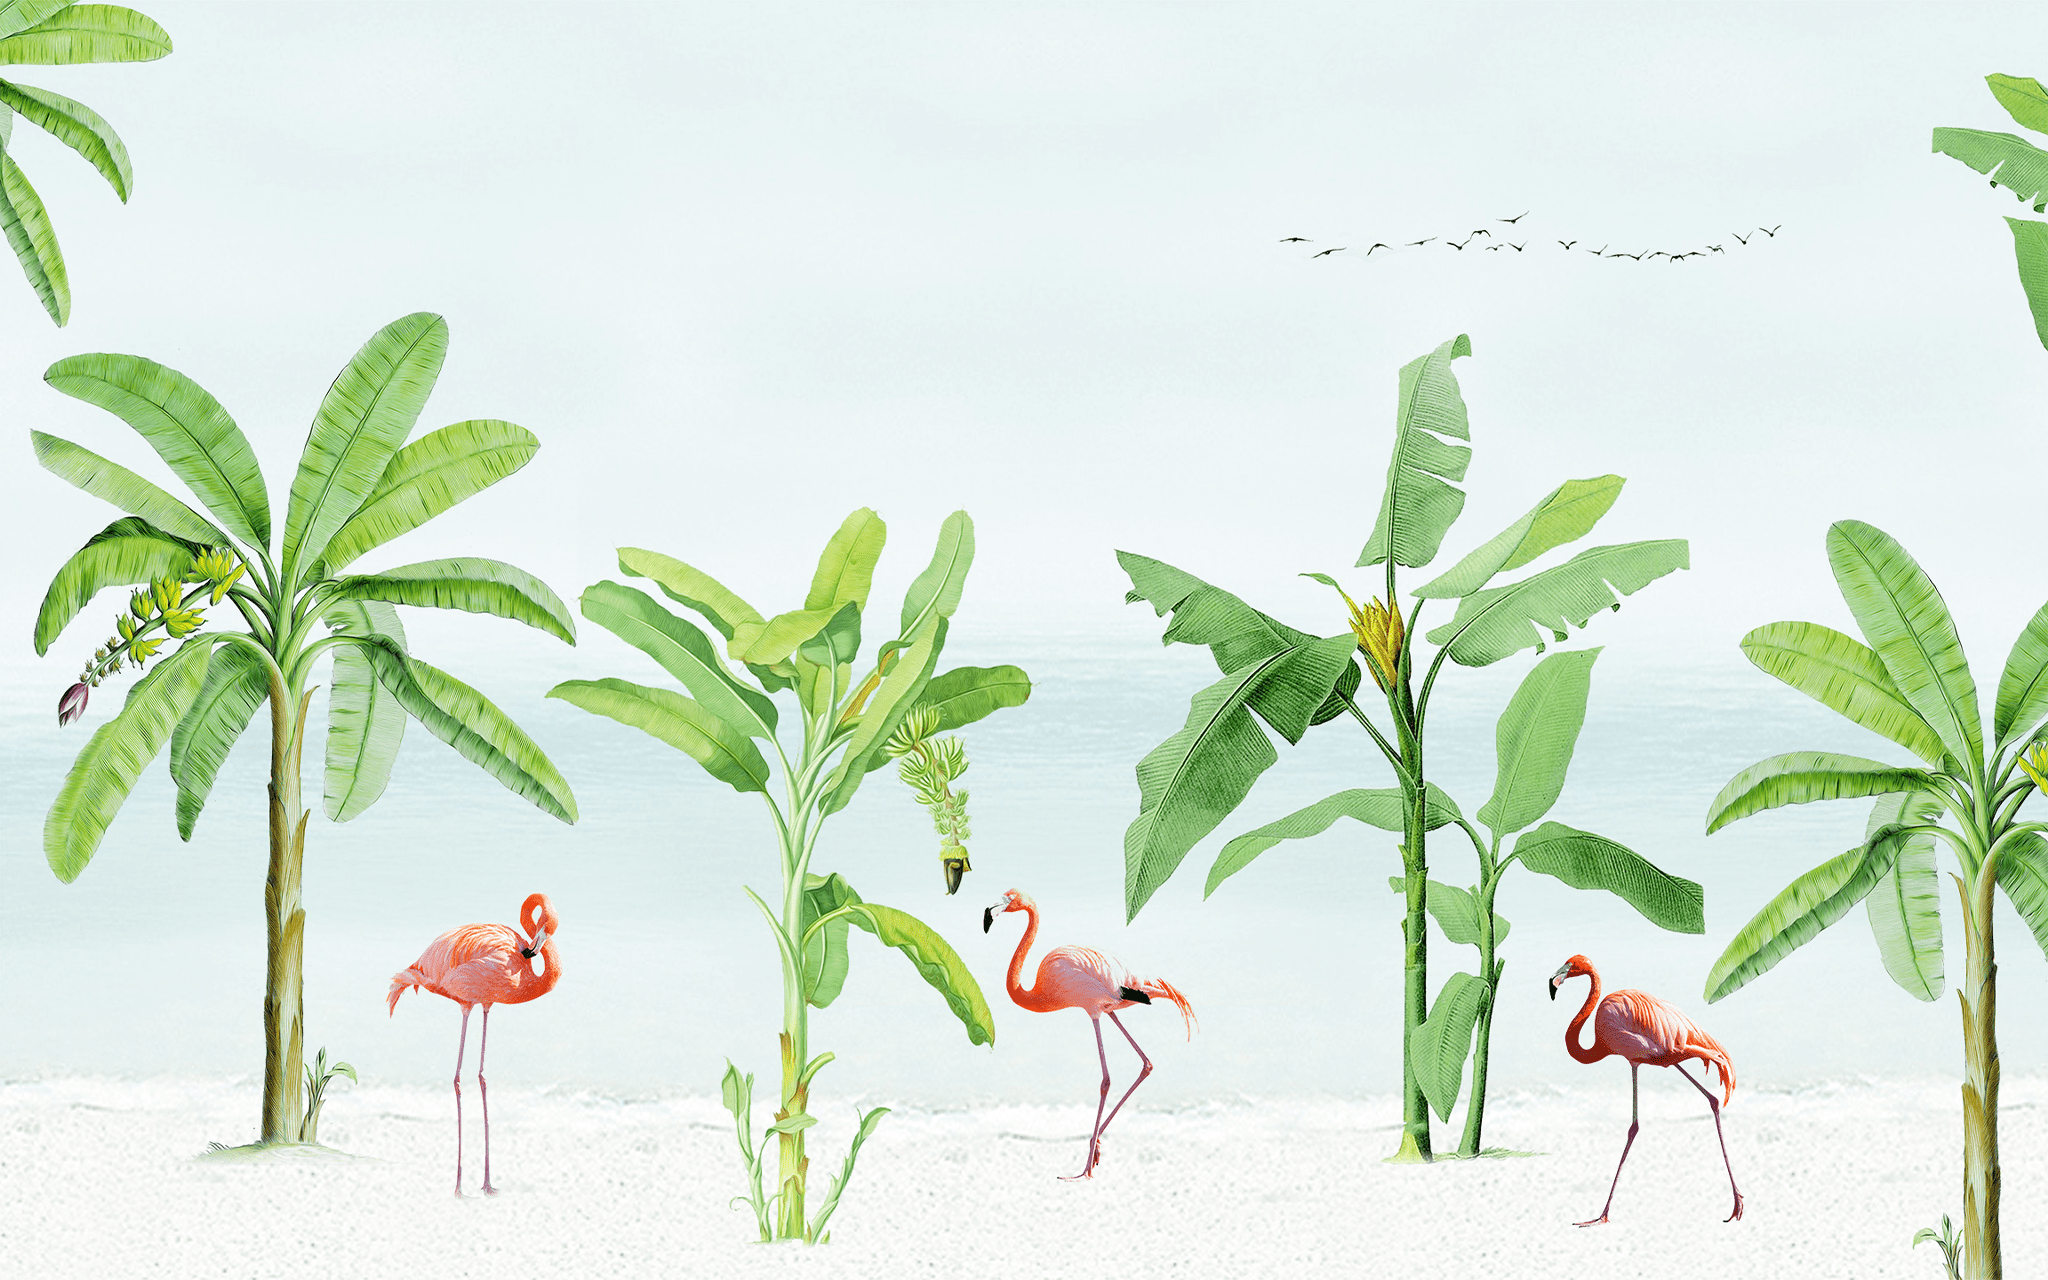 Banana Trees with Flamingos